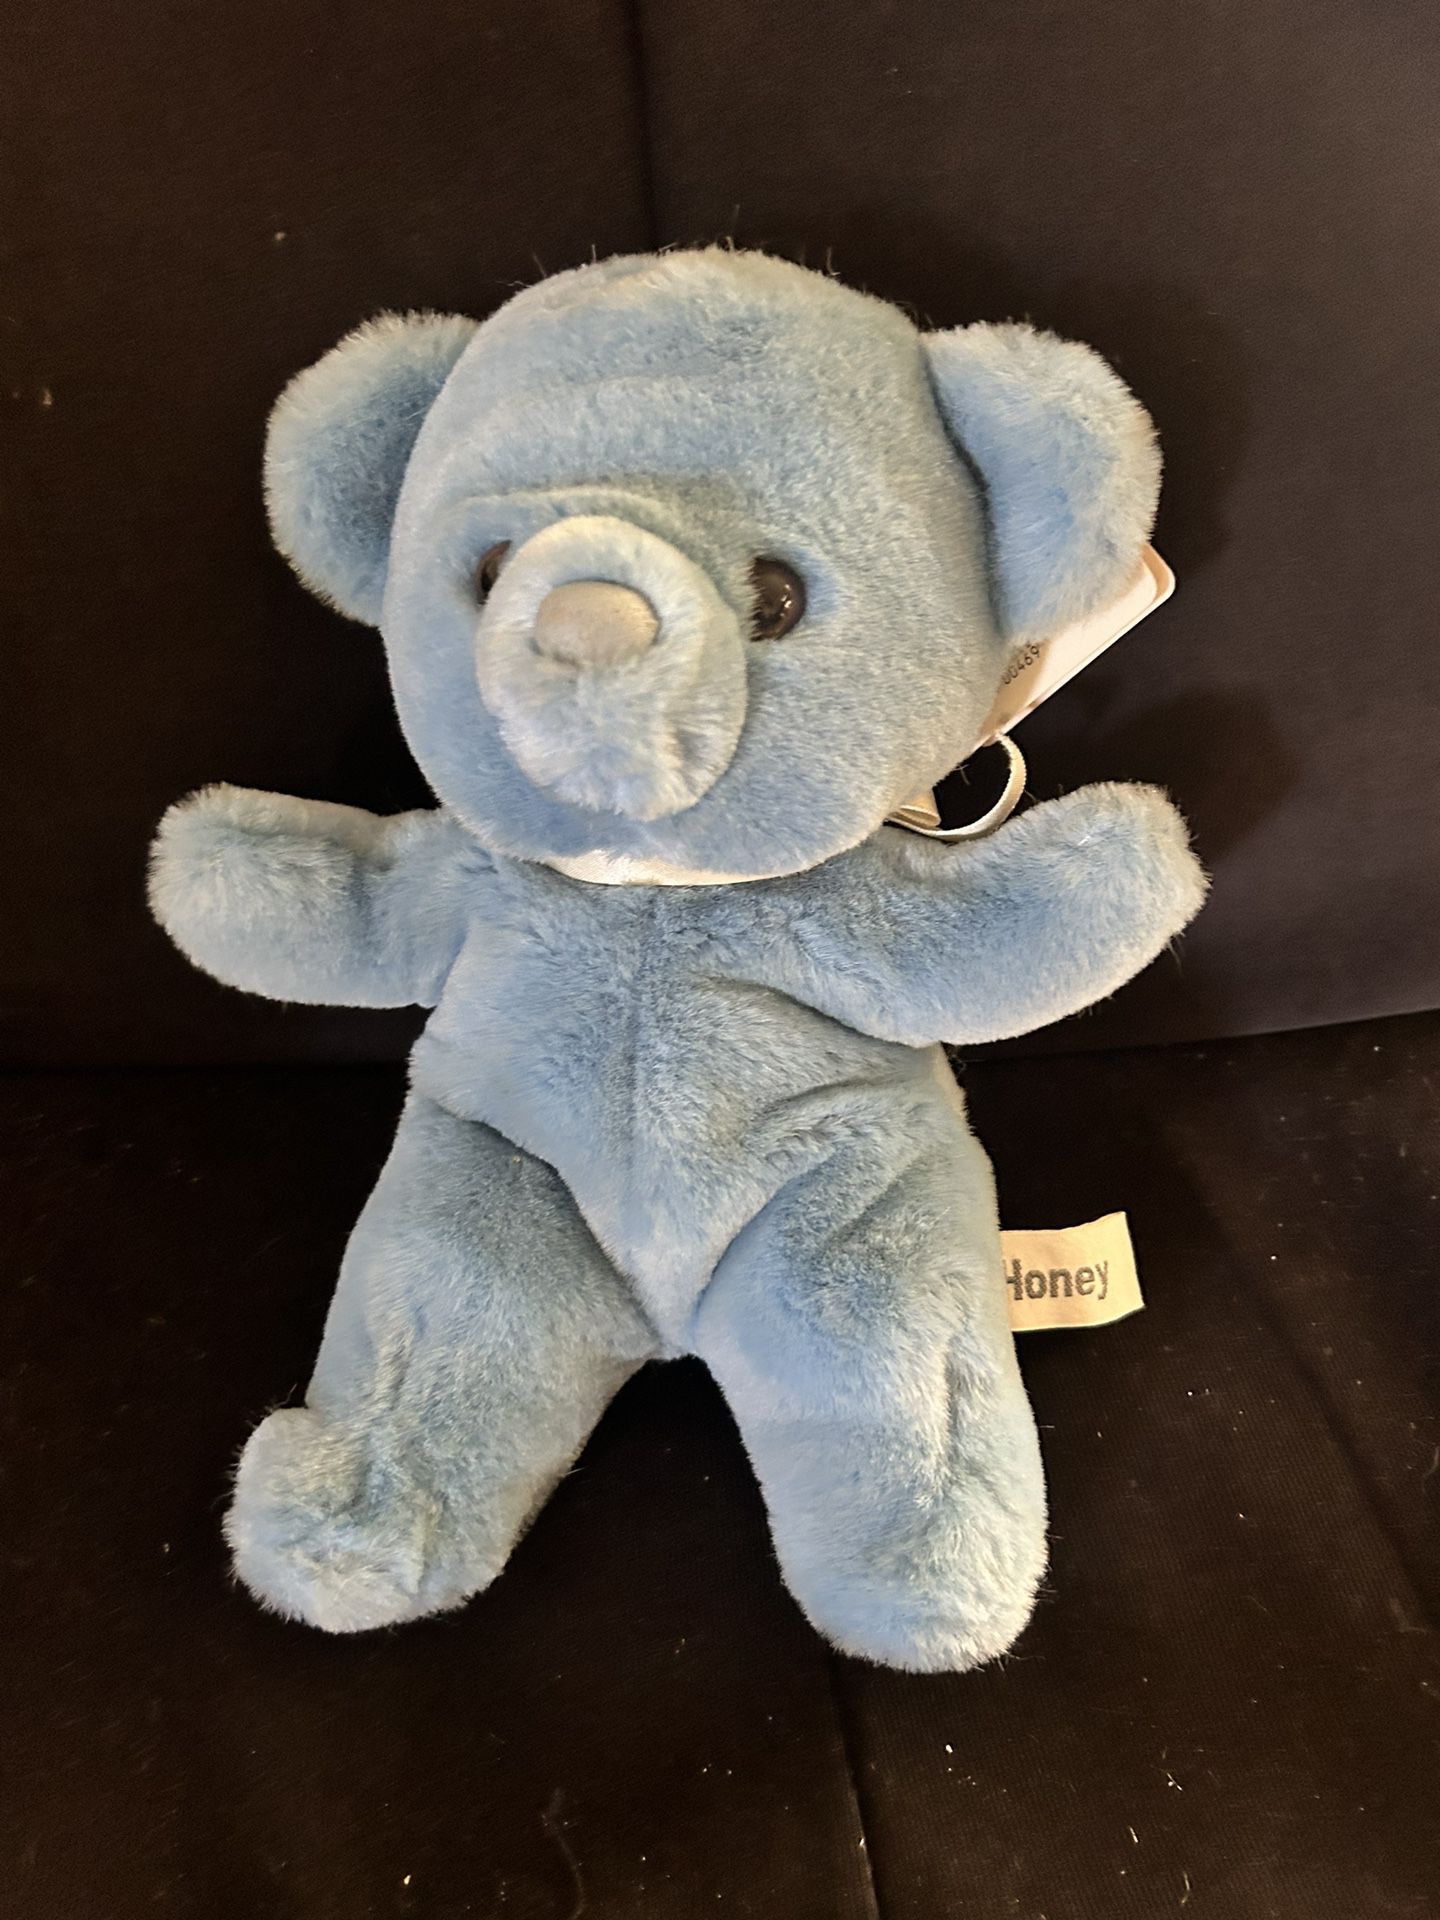 Cuddly Light Blue Vintage Teddy Bear